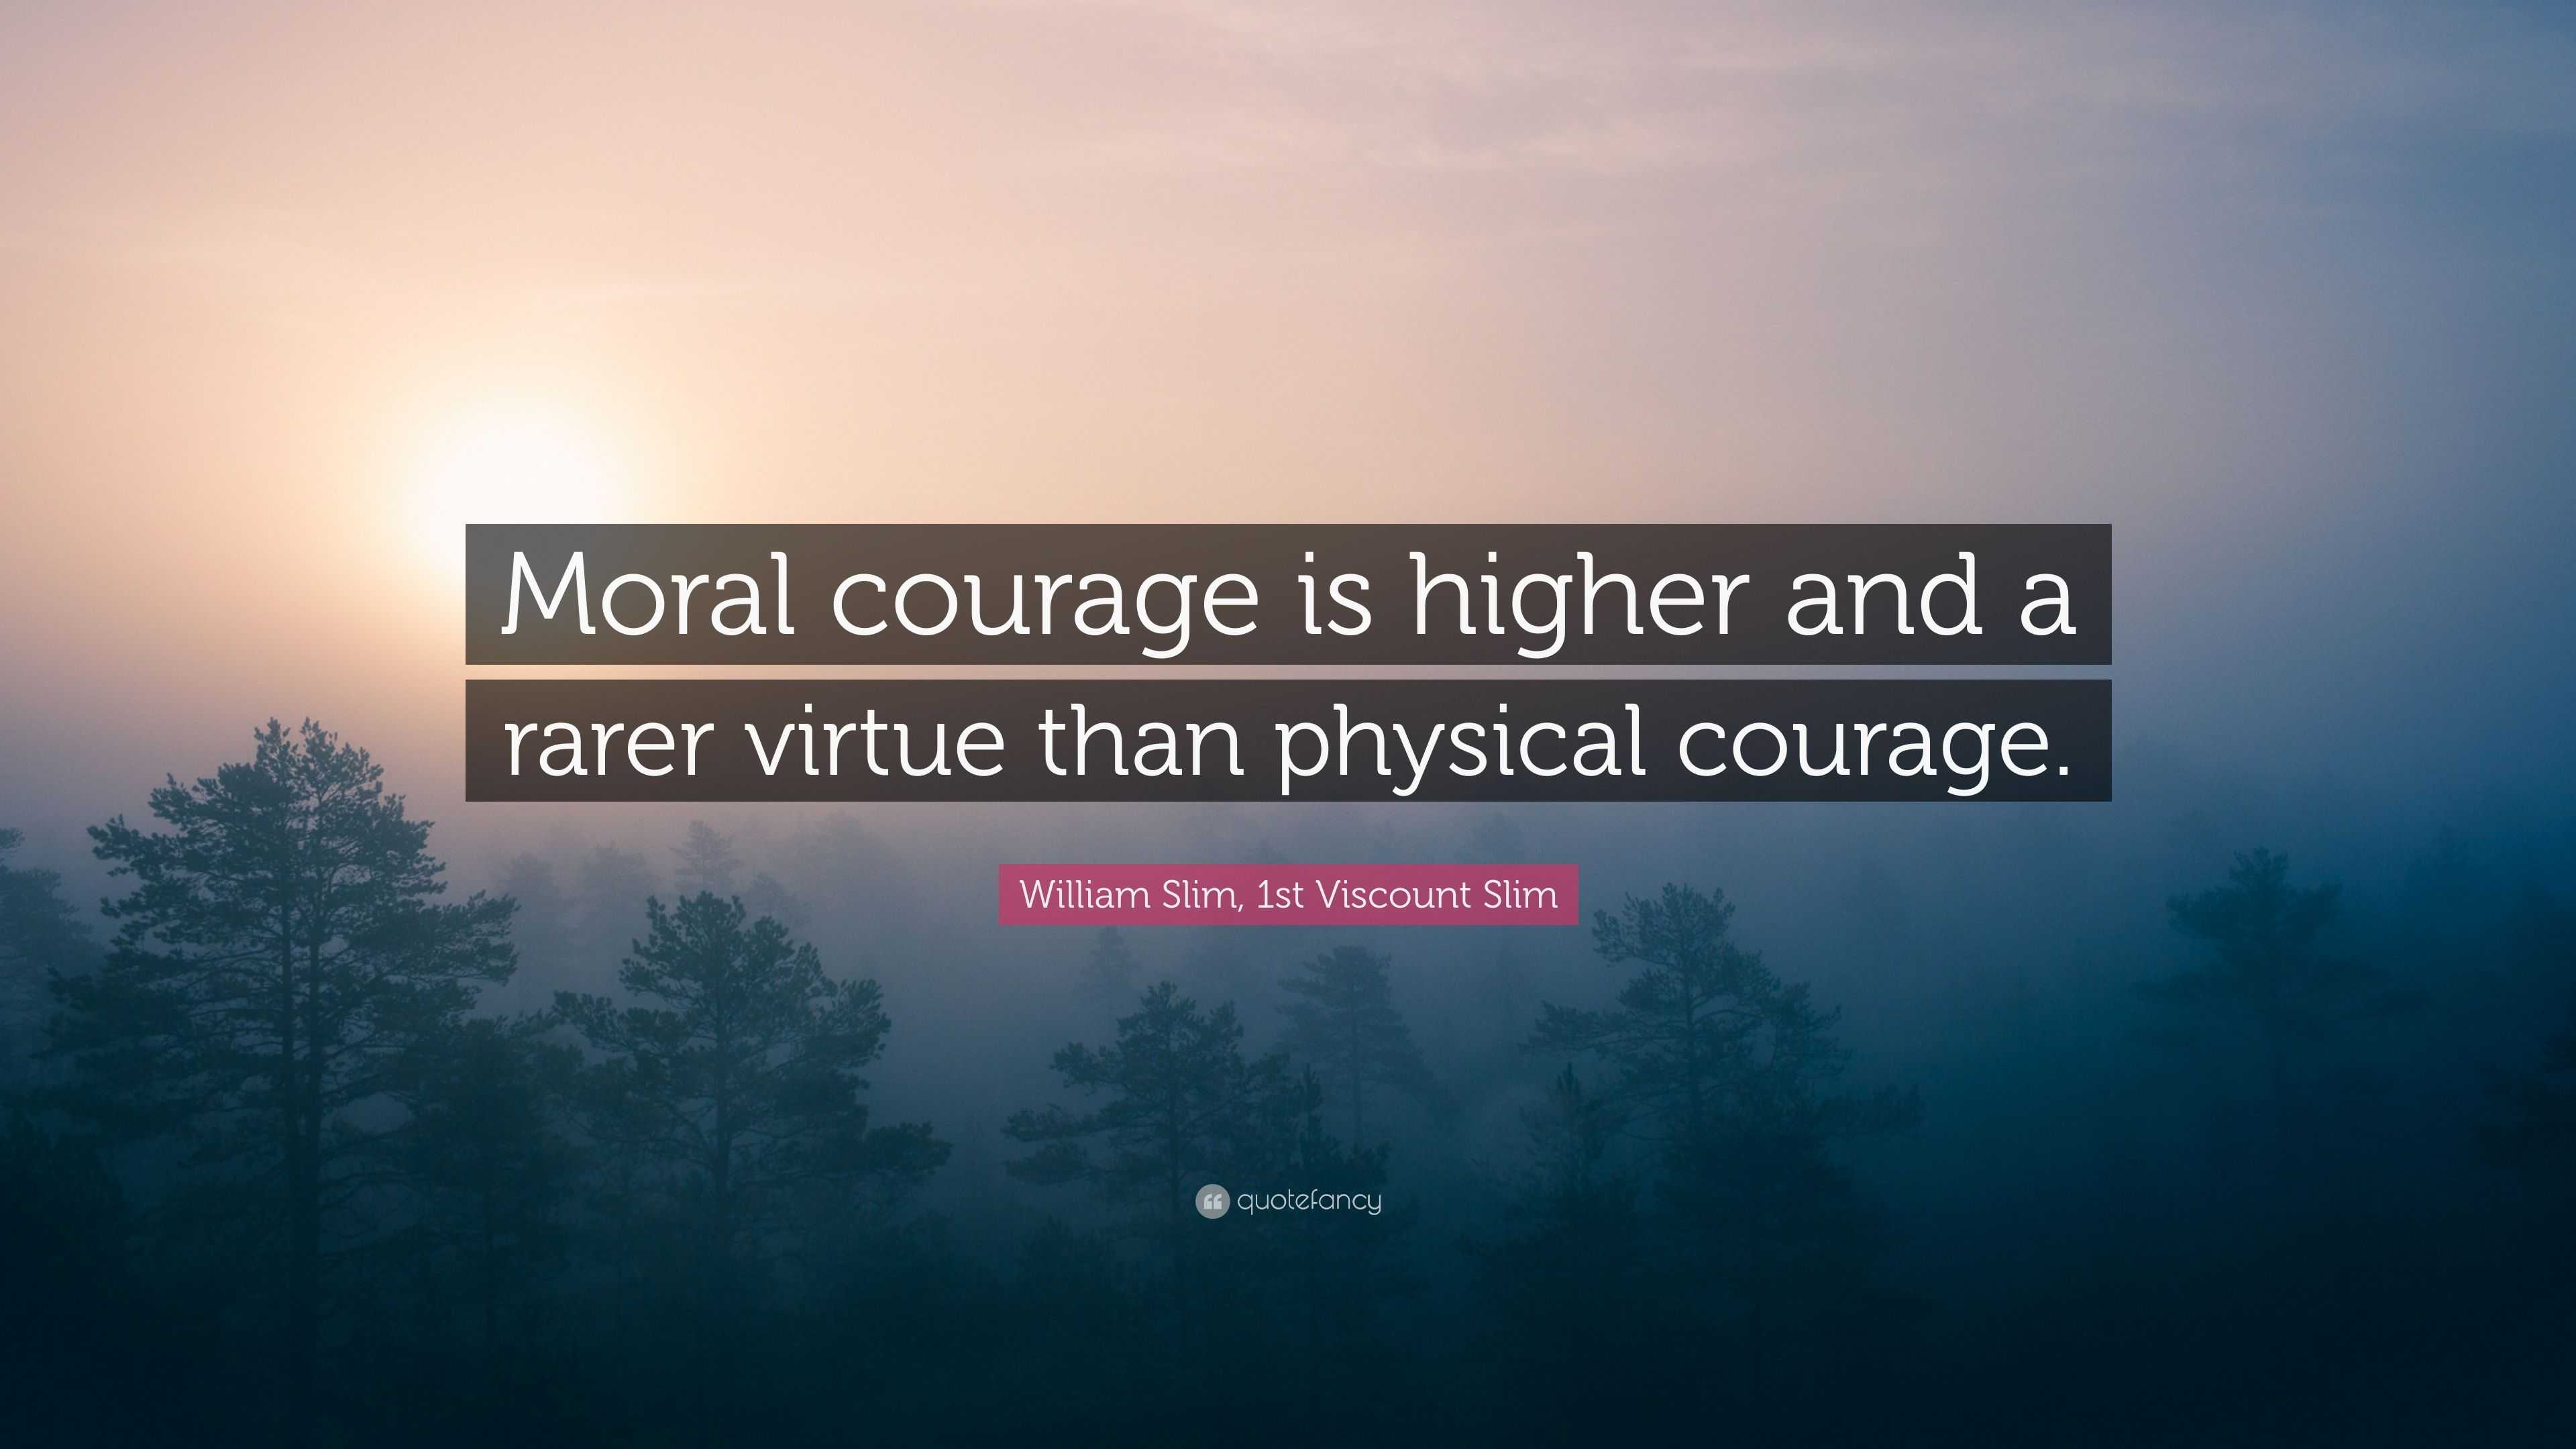 William Slim, 1st Viscount Slim Quote: "Moral courage is ...